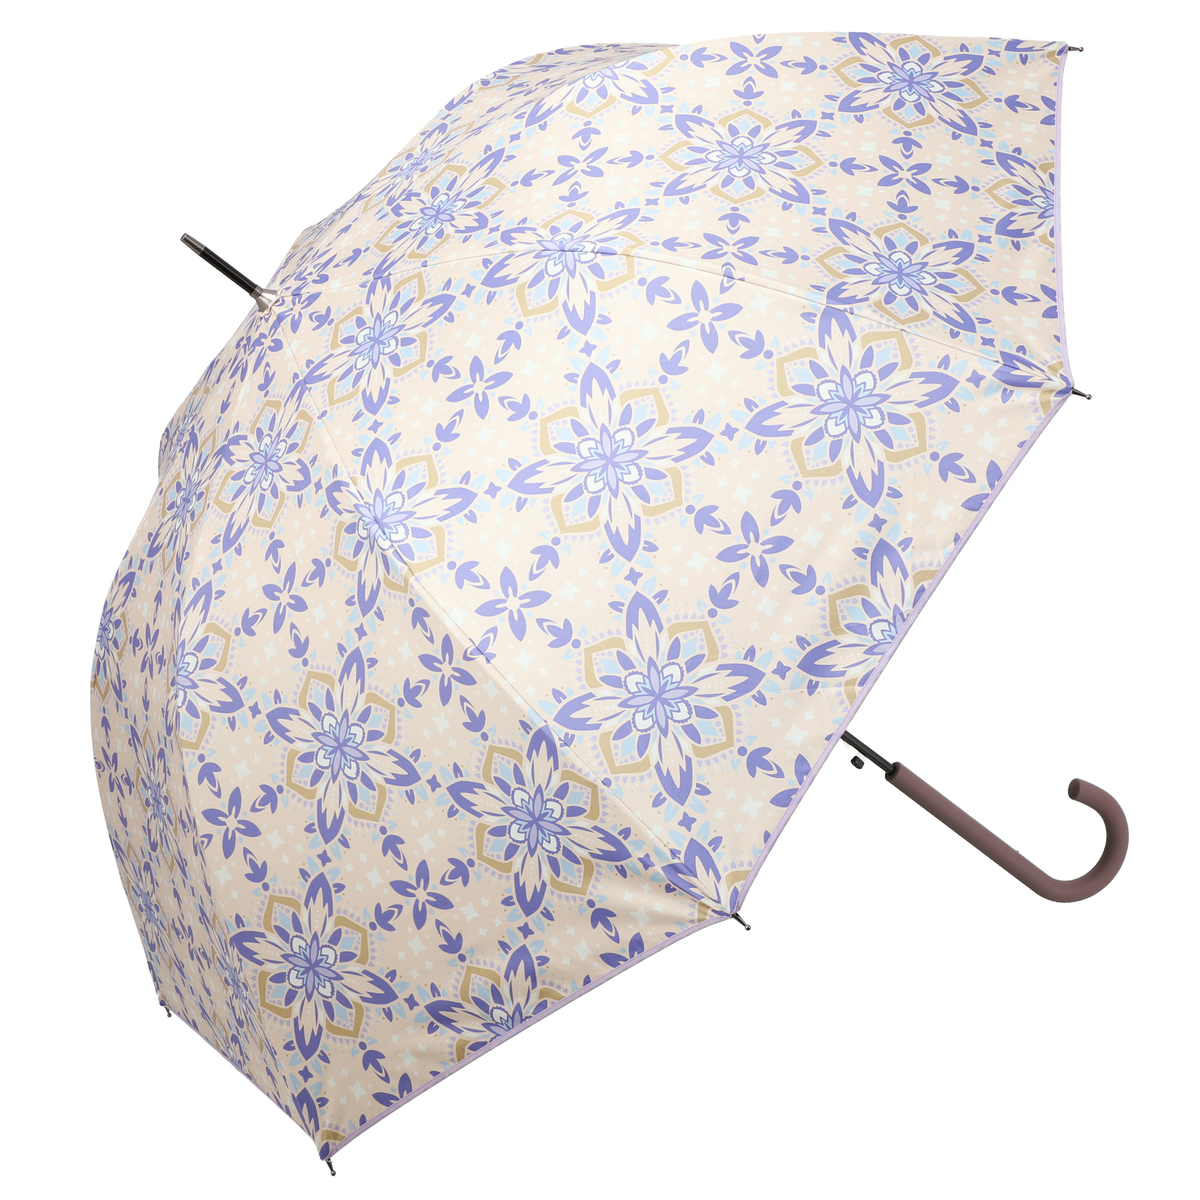  ルナジュメール UV+1級遮光+晴雨兼用 タイル柄長傘  ピンク